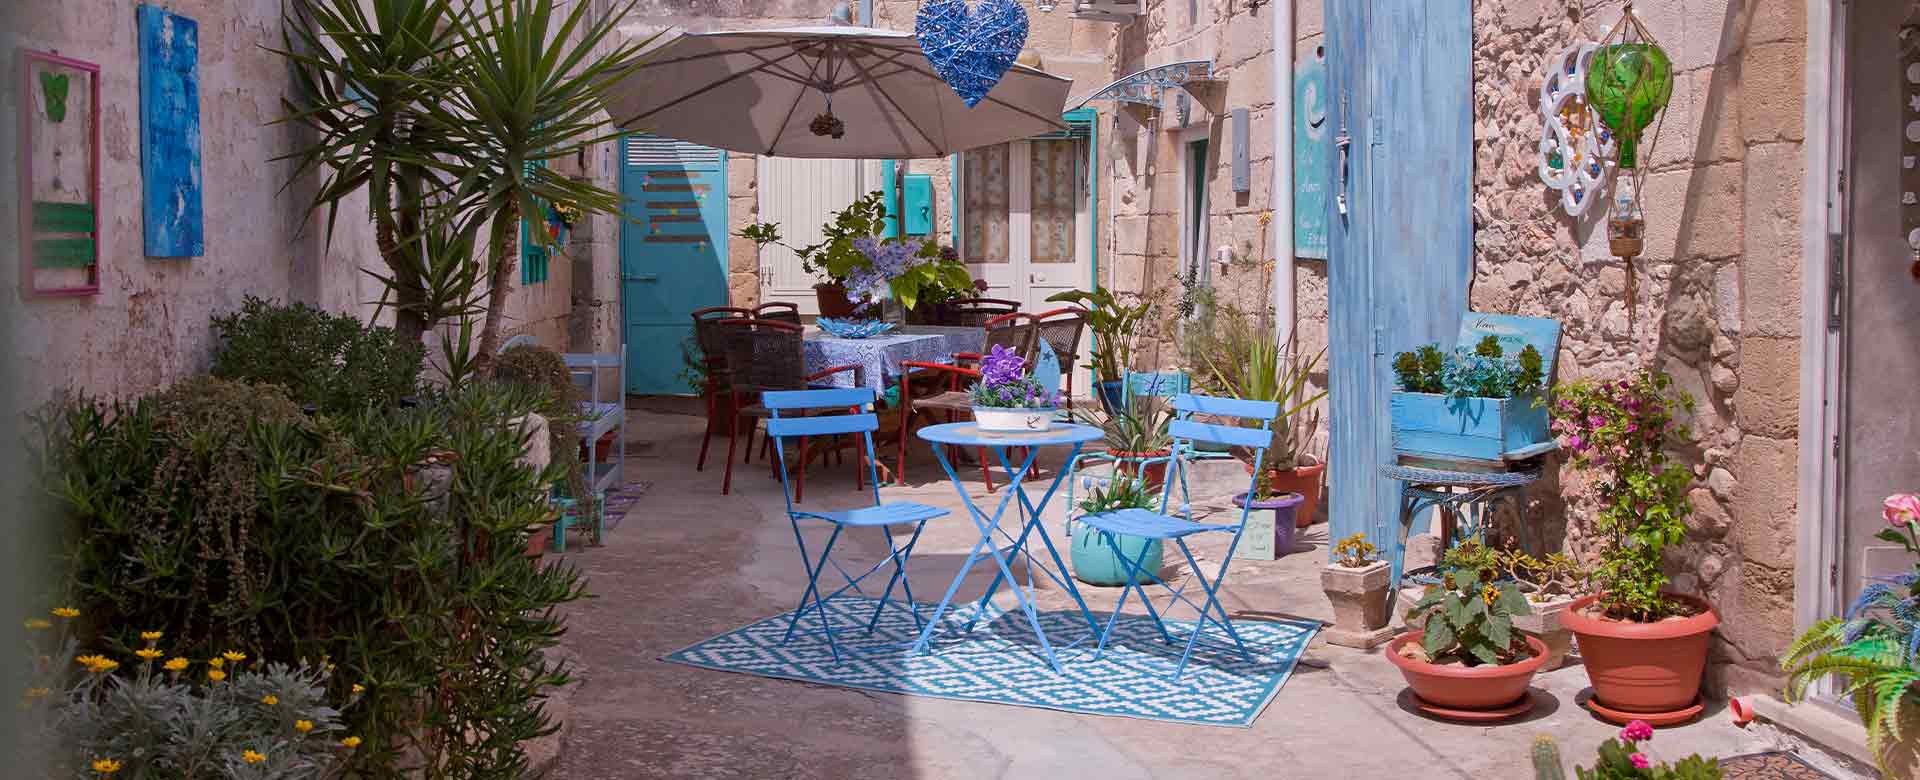 Corte Zoe, abitazione privata con i tipici colori dello stile mediterraneo, Martano (LE)